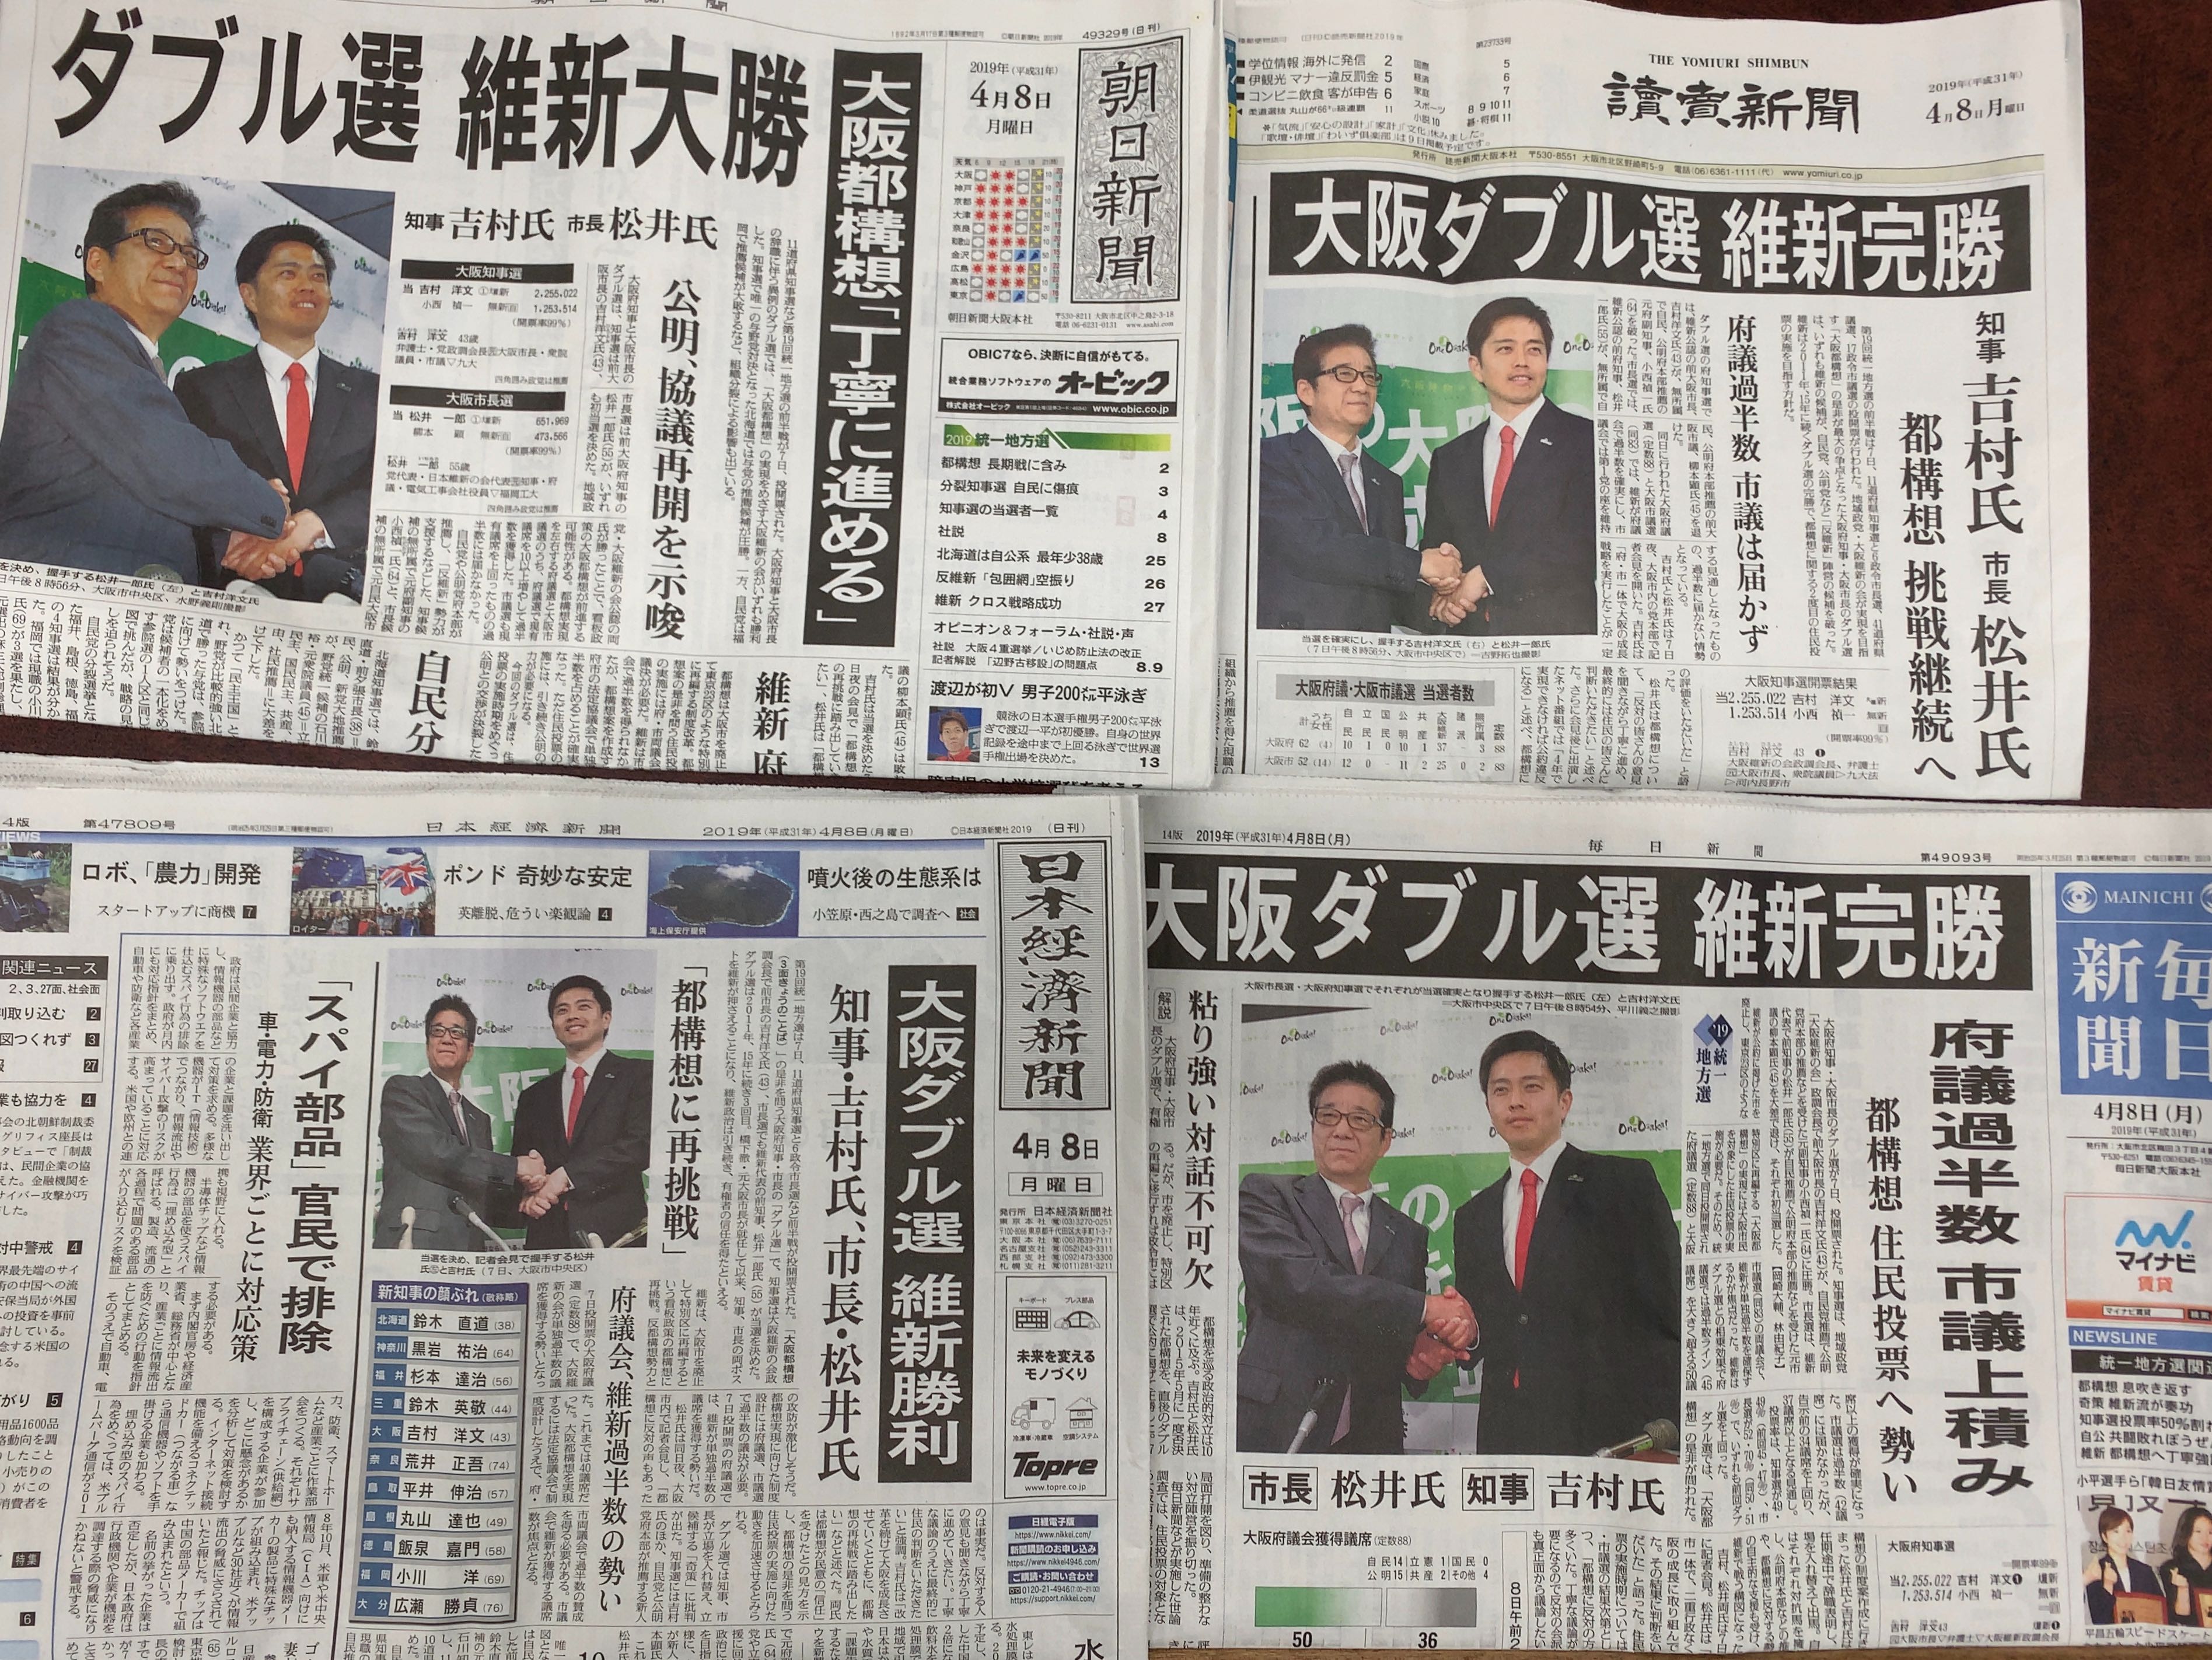 構想 権 都 大阪 選挙 維新以外の政党が大阪都構想に反対するのはなぜか